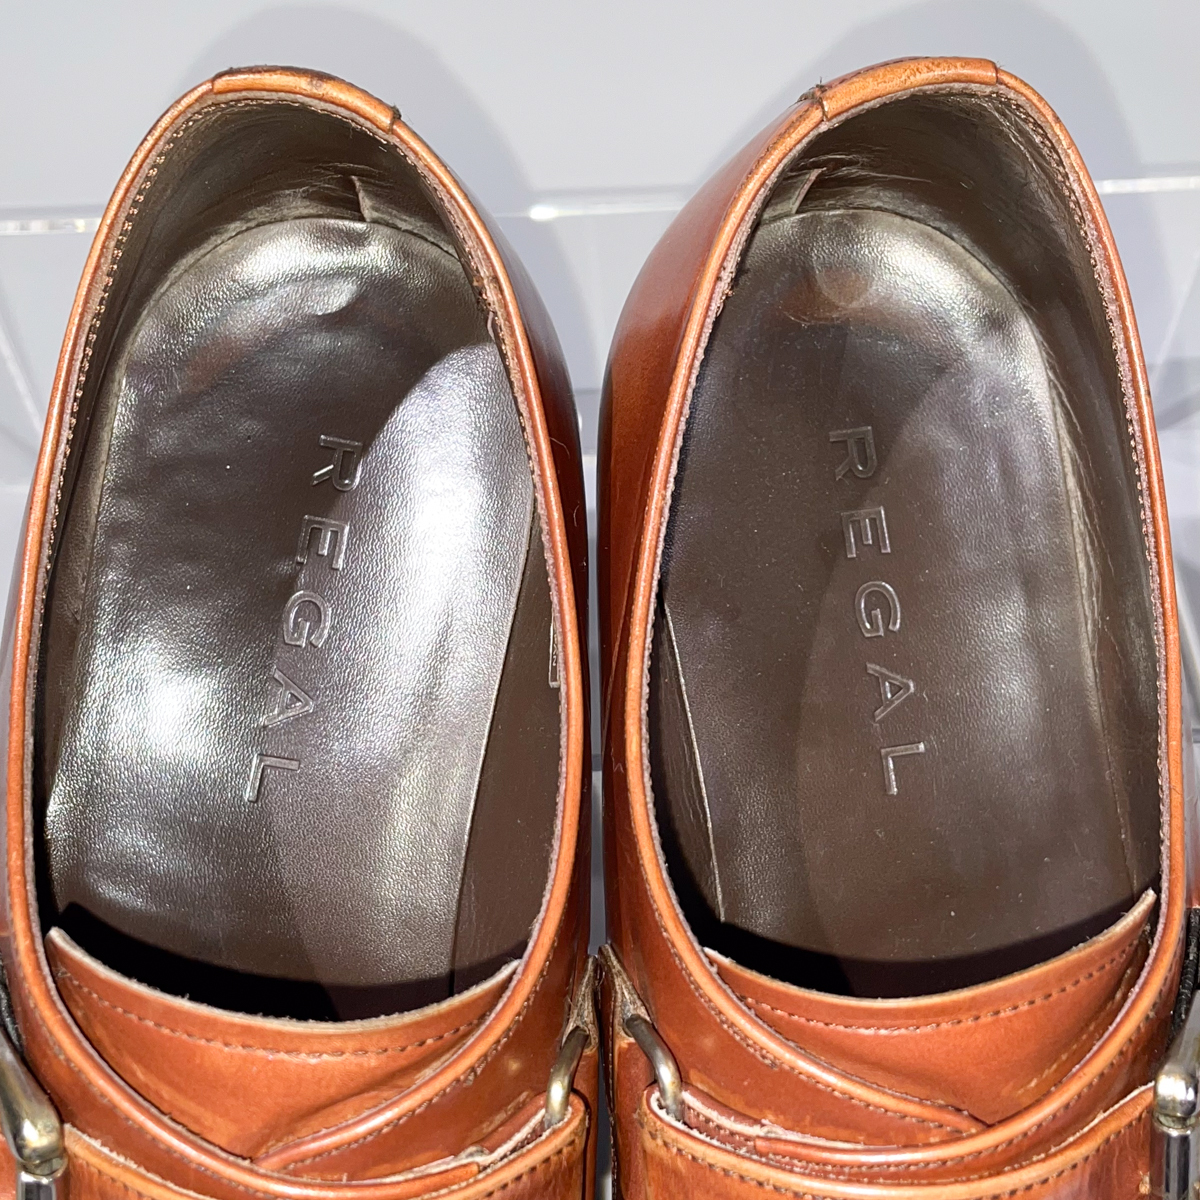 即決 REGAL リーガル モンクストラップ スワールトゥ ブラウン 茶色 メンズ 本革 レザー 革靴 25cm ビジネスシューズ 紳士靴 A1907_画像8